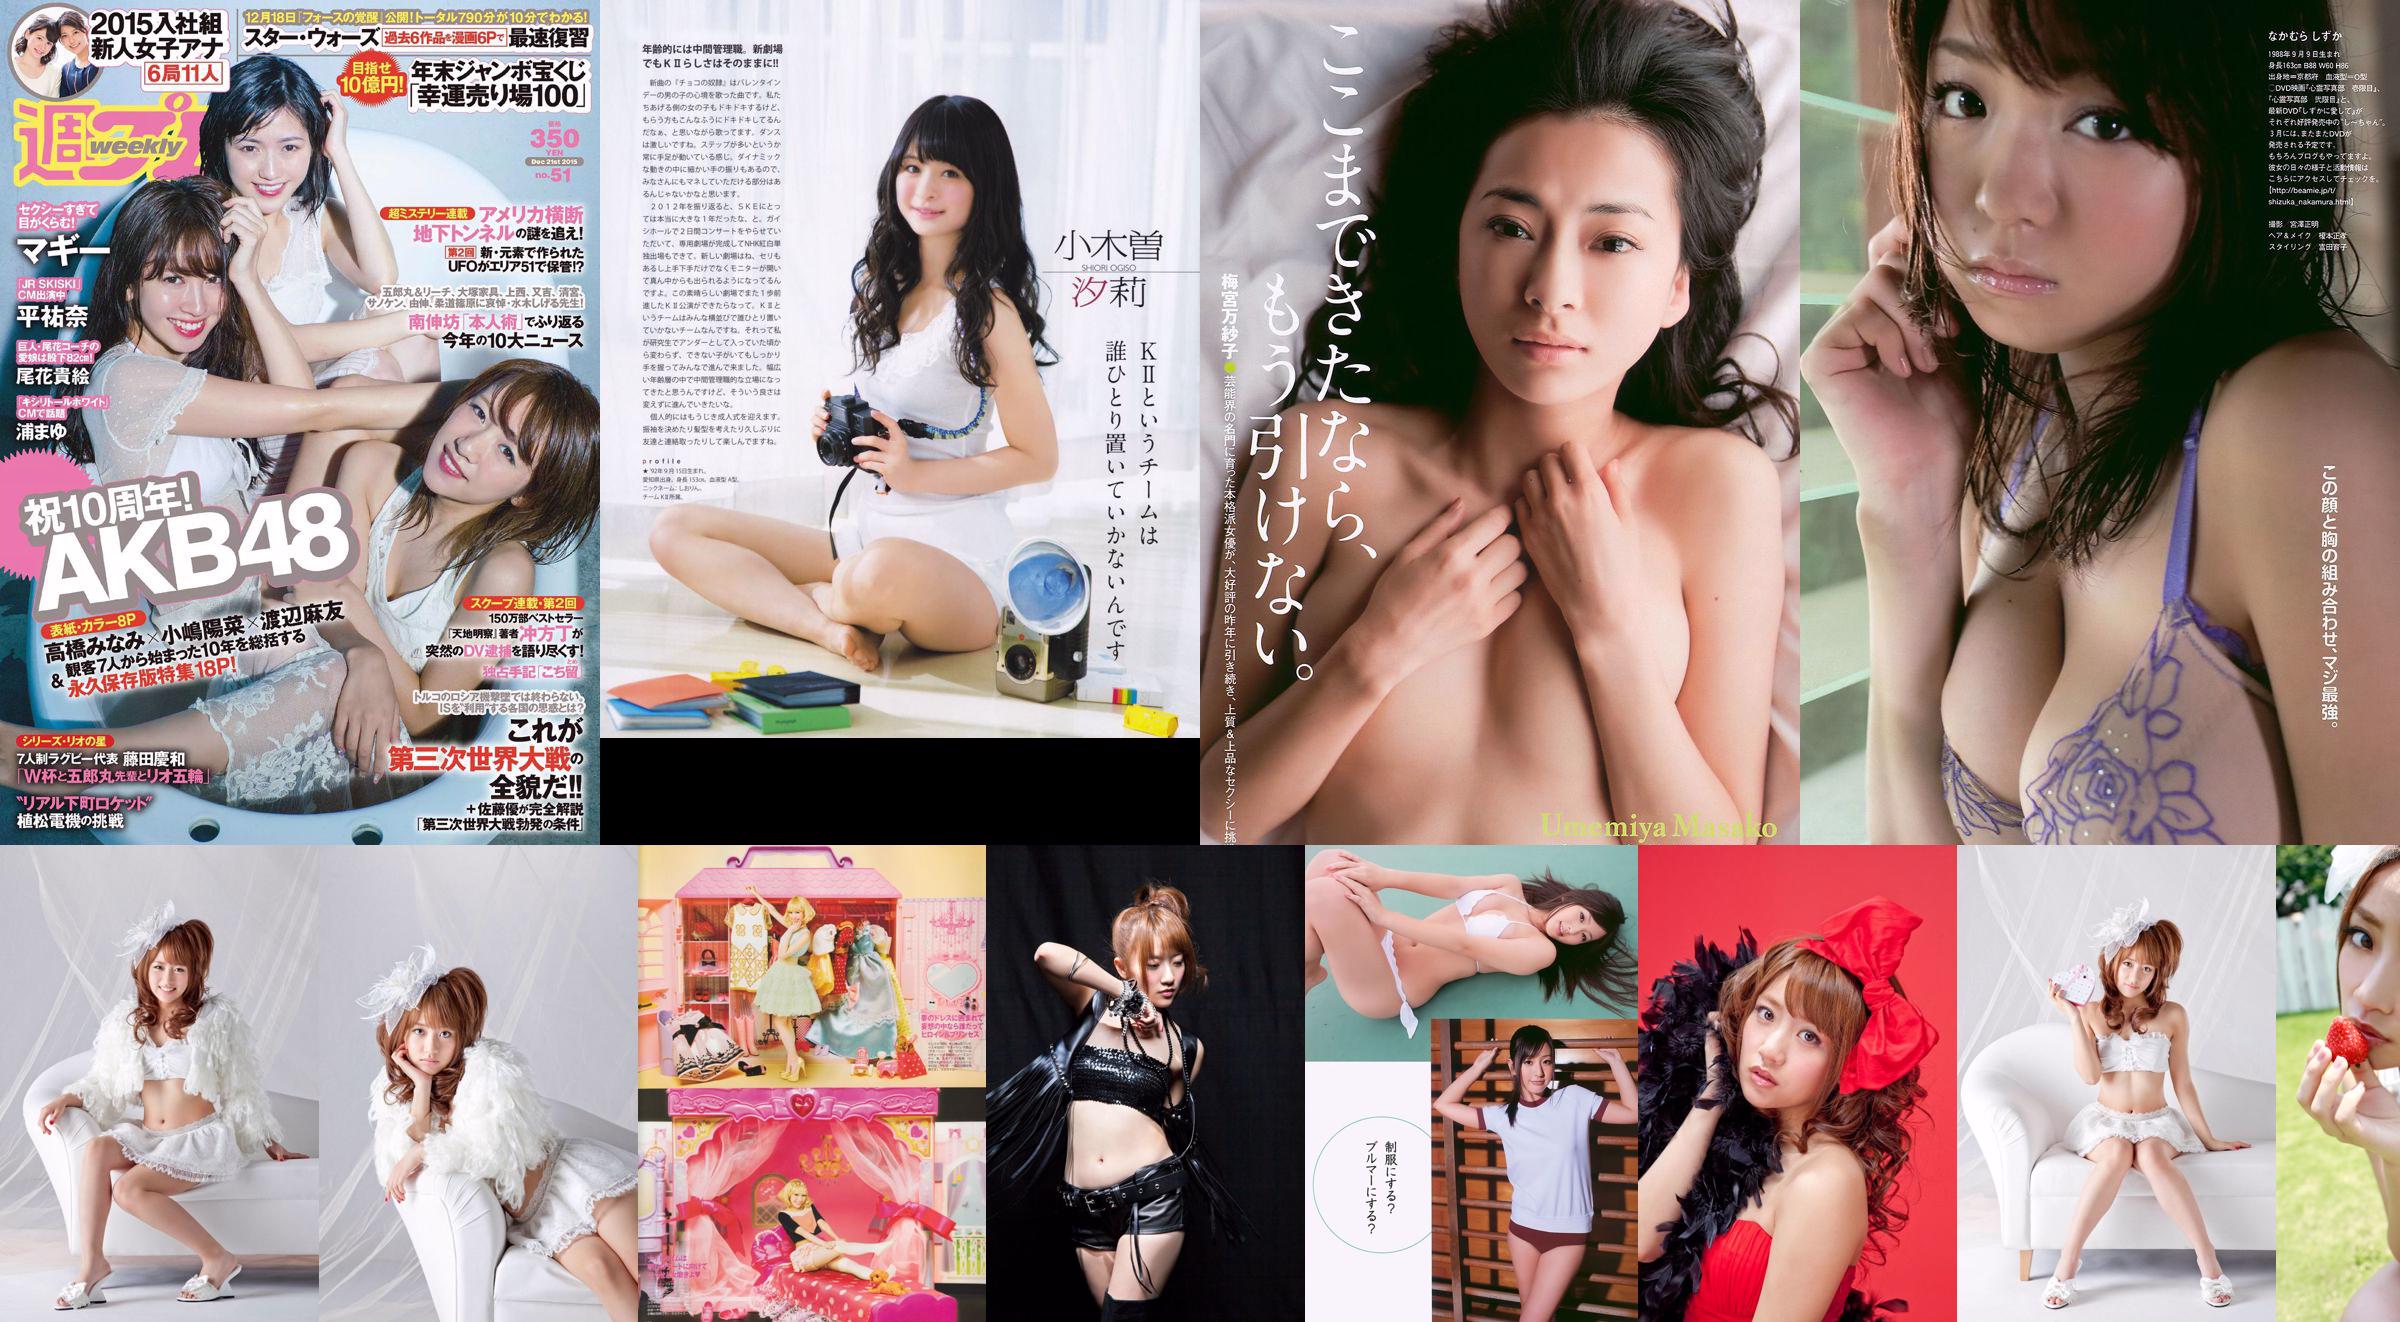 [Bomb Magazine] 2013 N ° 02 Takahashi Minami Matsui Jurina Kasai Tomomi Kitahara Riehi Photo magazine No.808027 Page 1